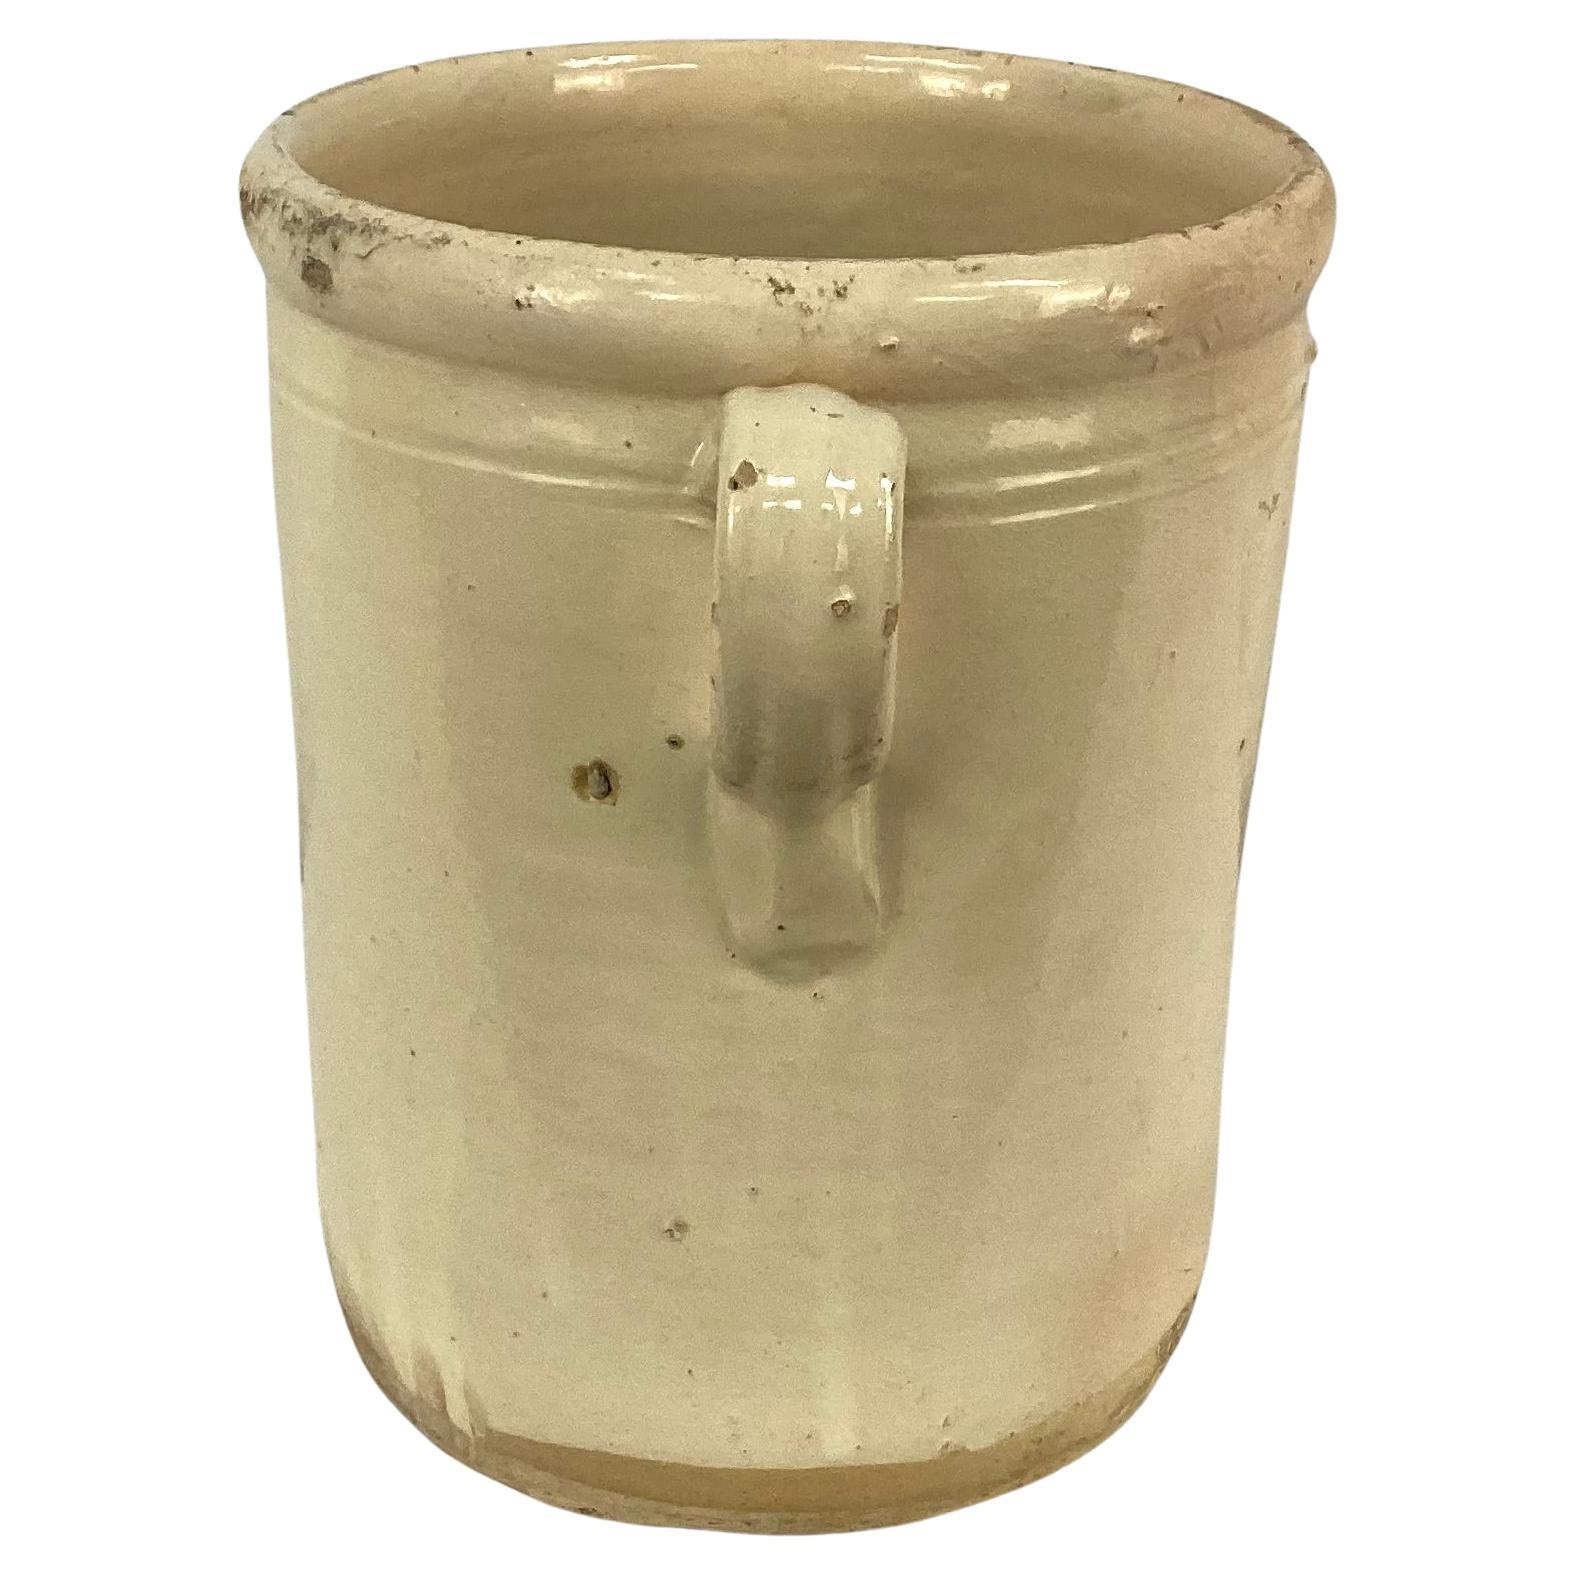  19th Century Italian Chiminea Preserve Pot     #4 In Good Condition For Sale In Bradenton, FL